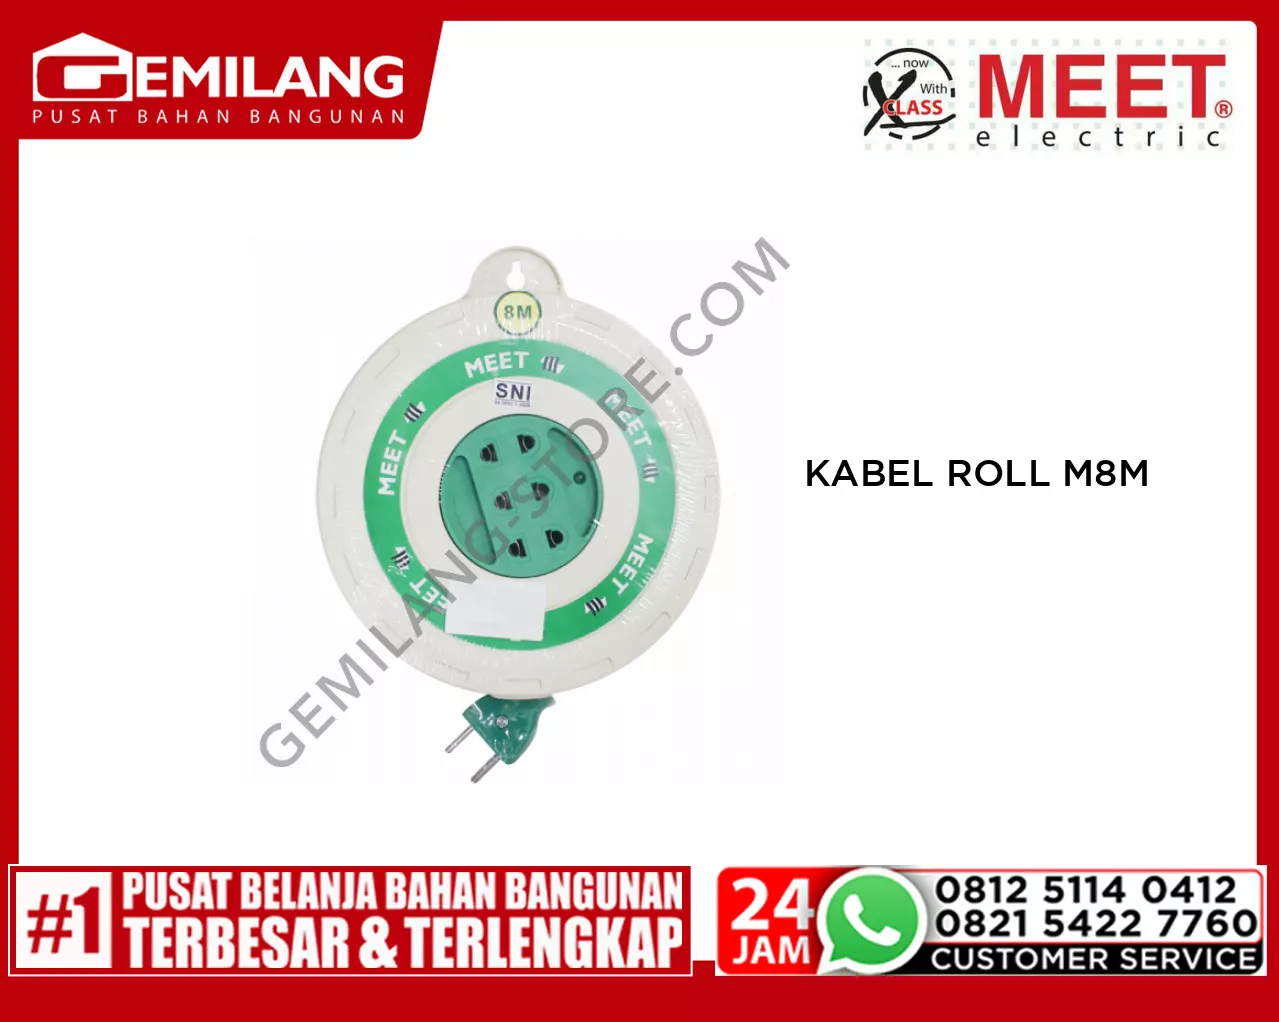 MEET KABEL ROLL M8M